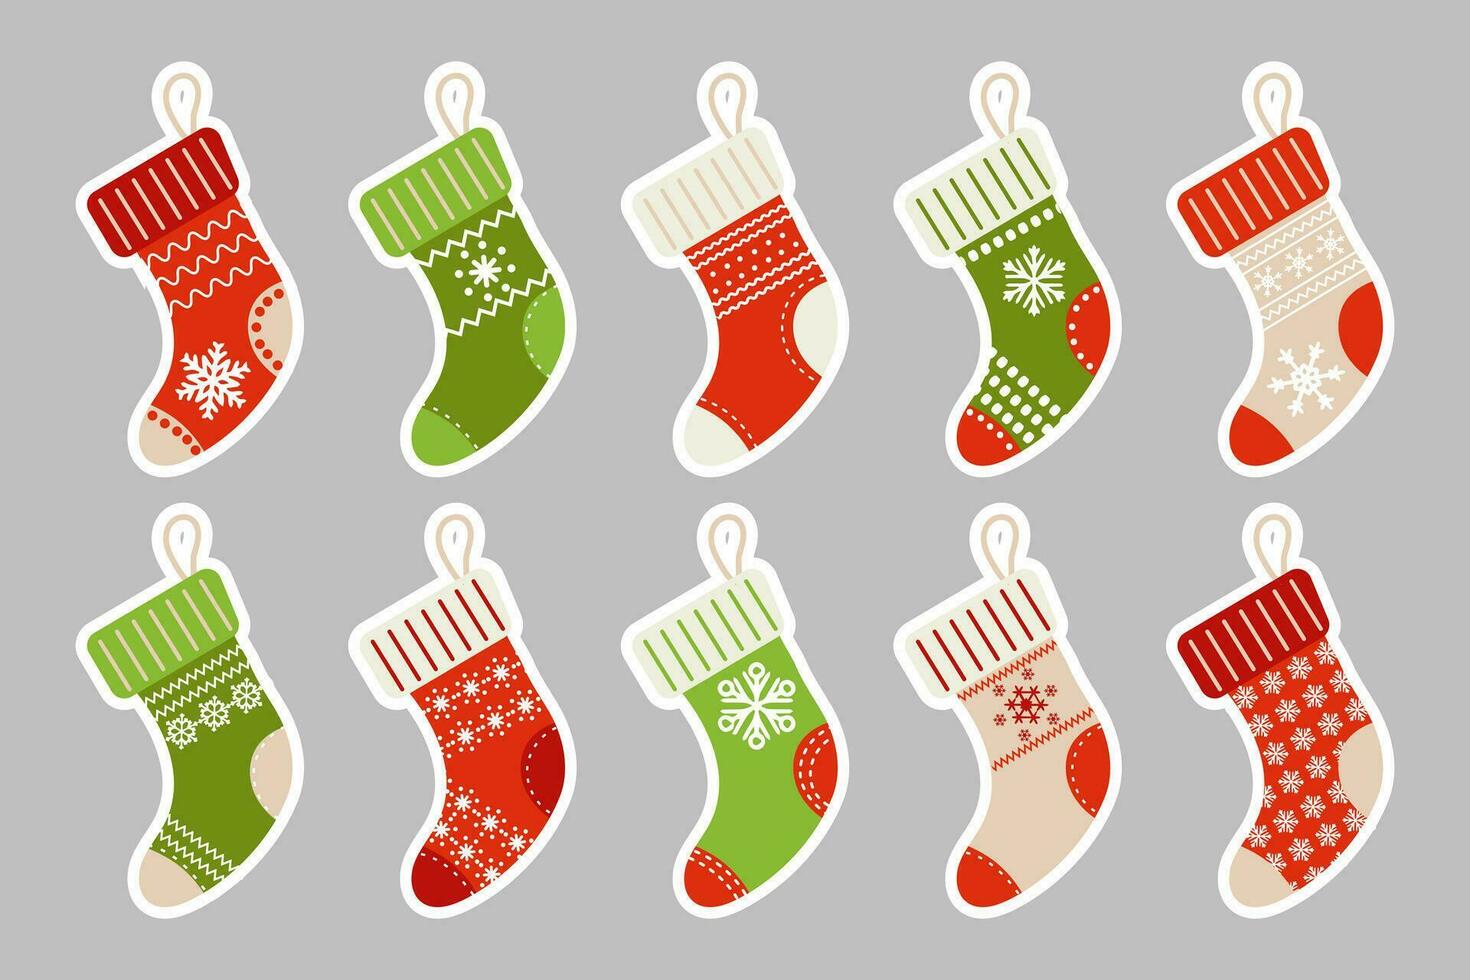 winter Kerstmis sokken met sneeuwvlok ornament, stickers set. pictogrammen, vector